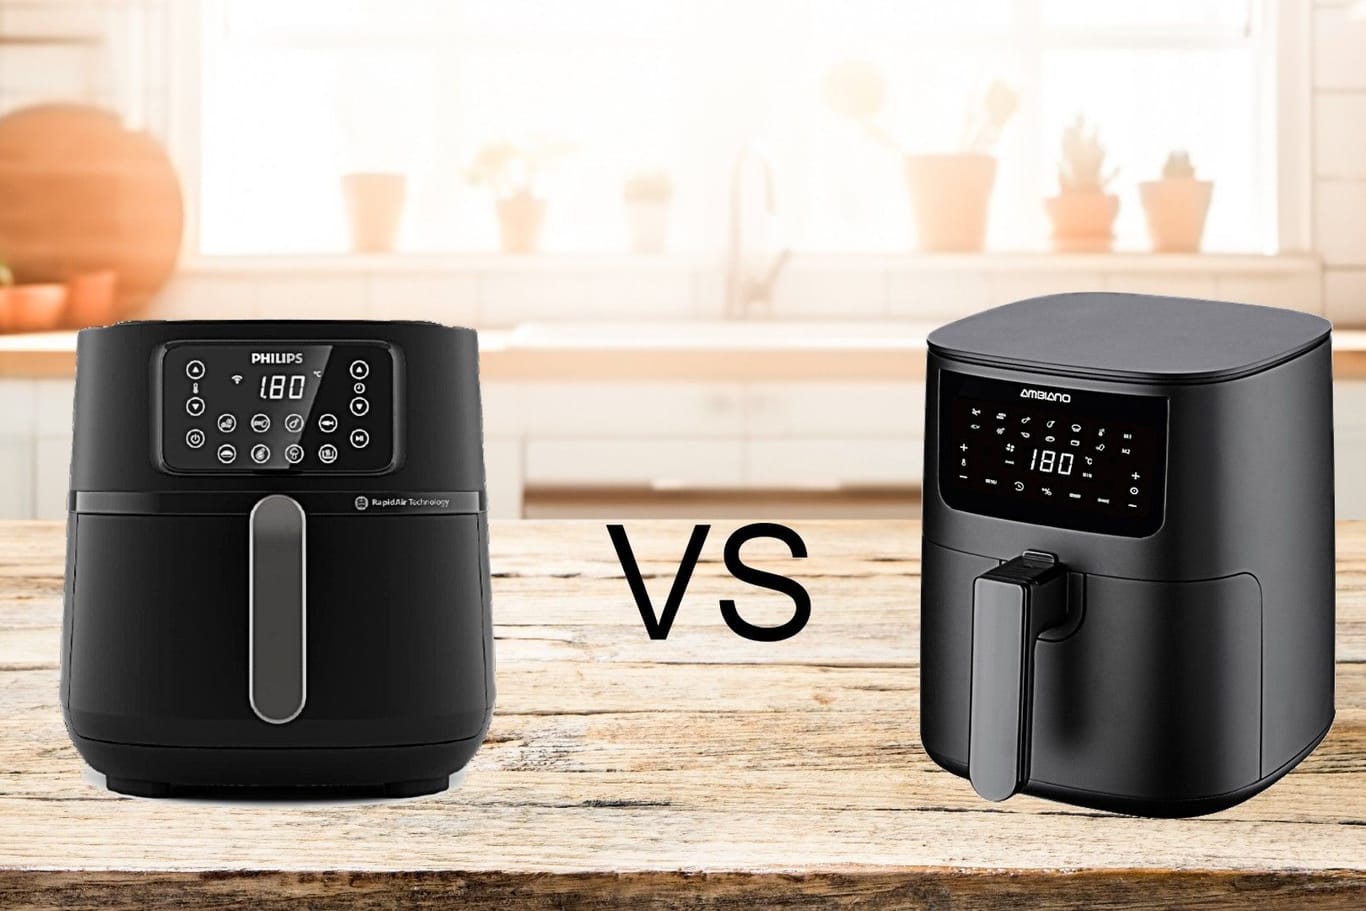 Vergleich zwischen dem Discounter-Airfryer und der Marken-Fritteuse: Beide sind derzeit im Angebot, aber welche ist die bessere Wahl?